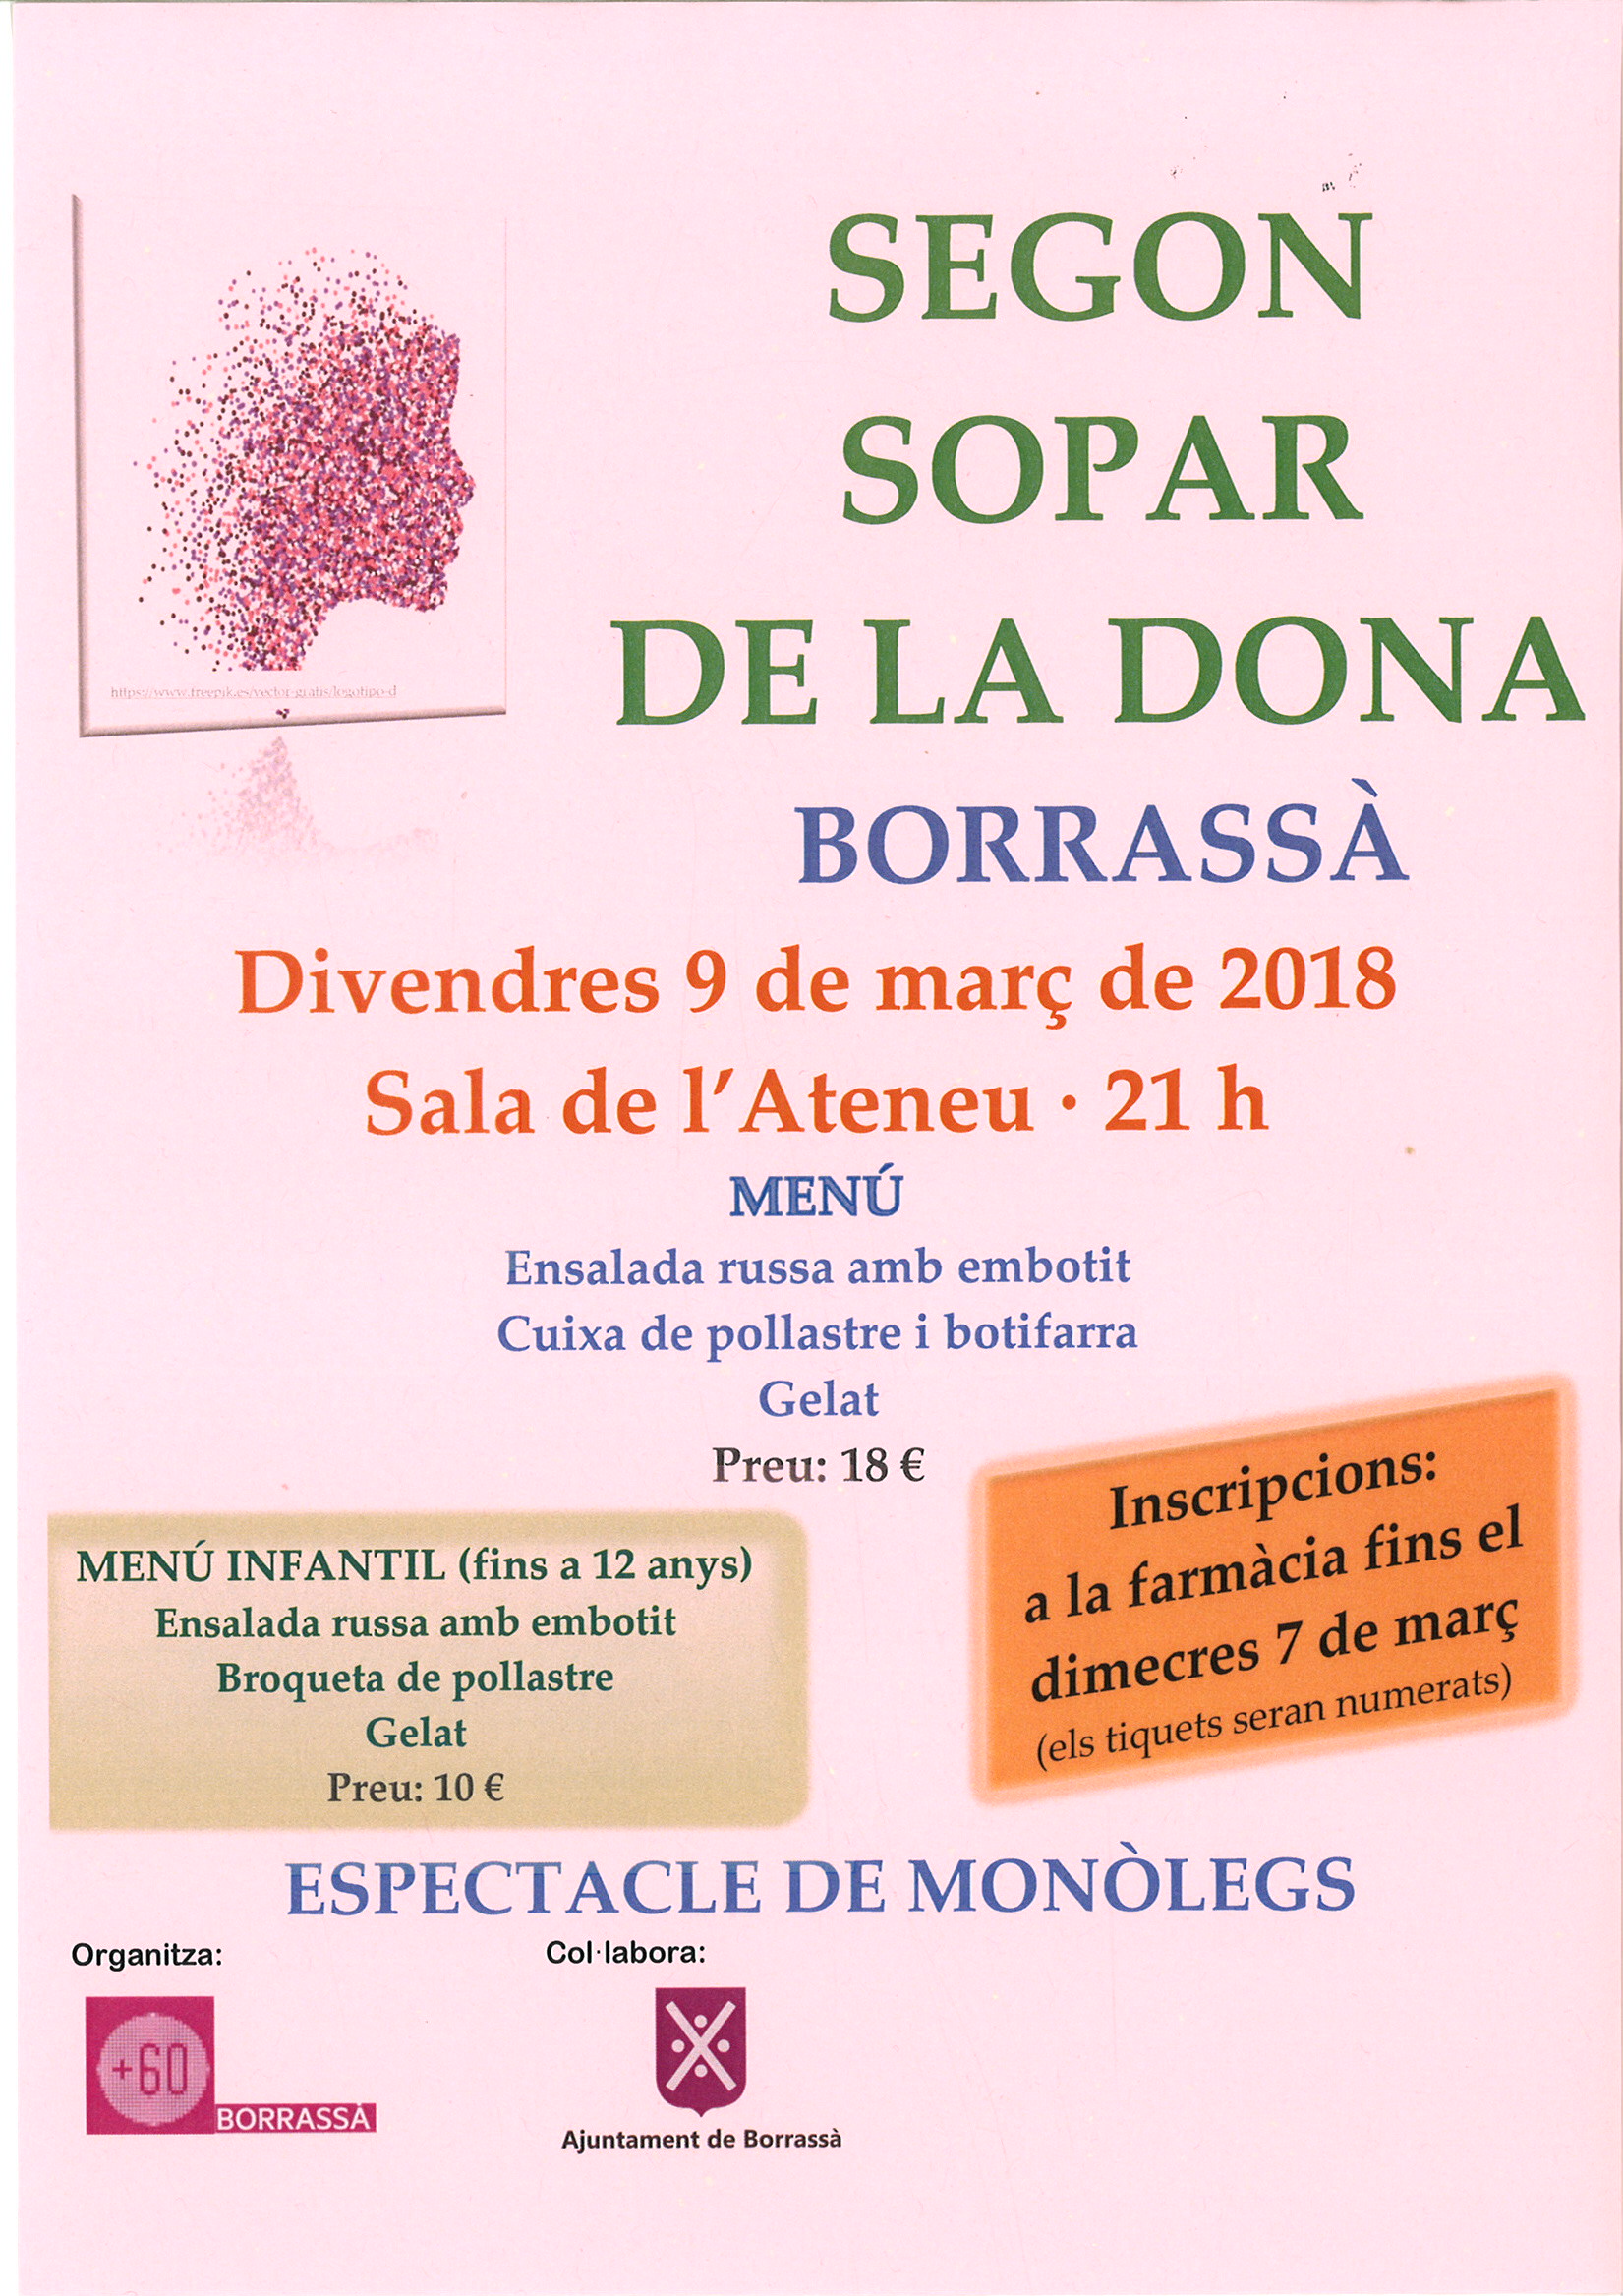 Noranta persones s'han apuntat al Segon Sopar de la dona de Borrassà, organitzat pel col·lectiu + 60 del poble, i que es farà aquest divendres, 9 de març.